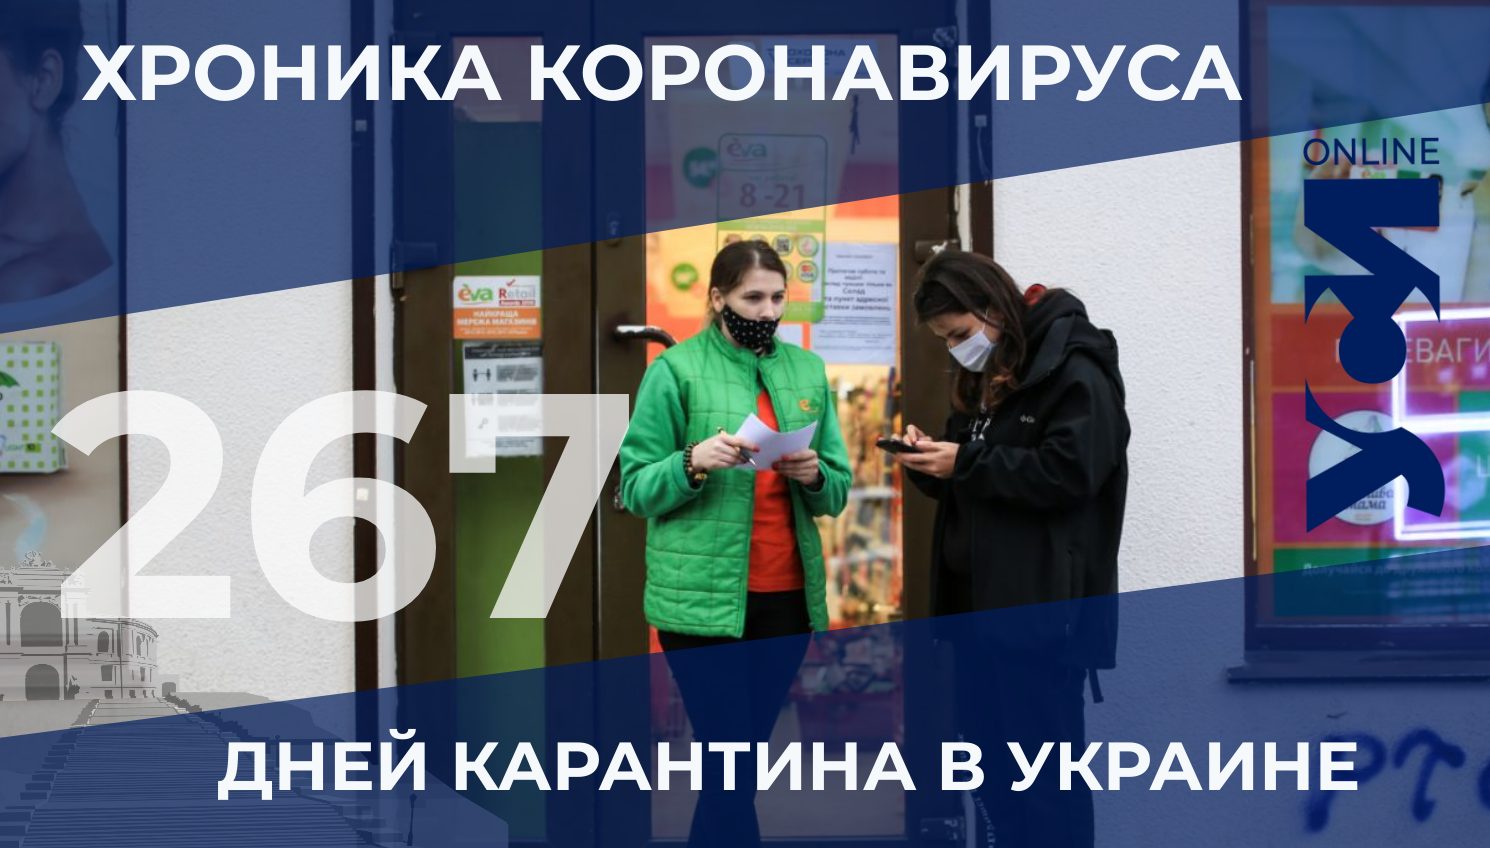 Коронавирус: в Одесской области снова рост заболеваемости «фото»